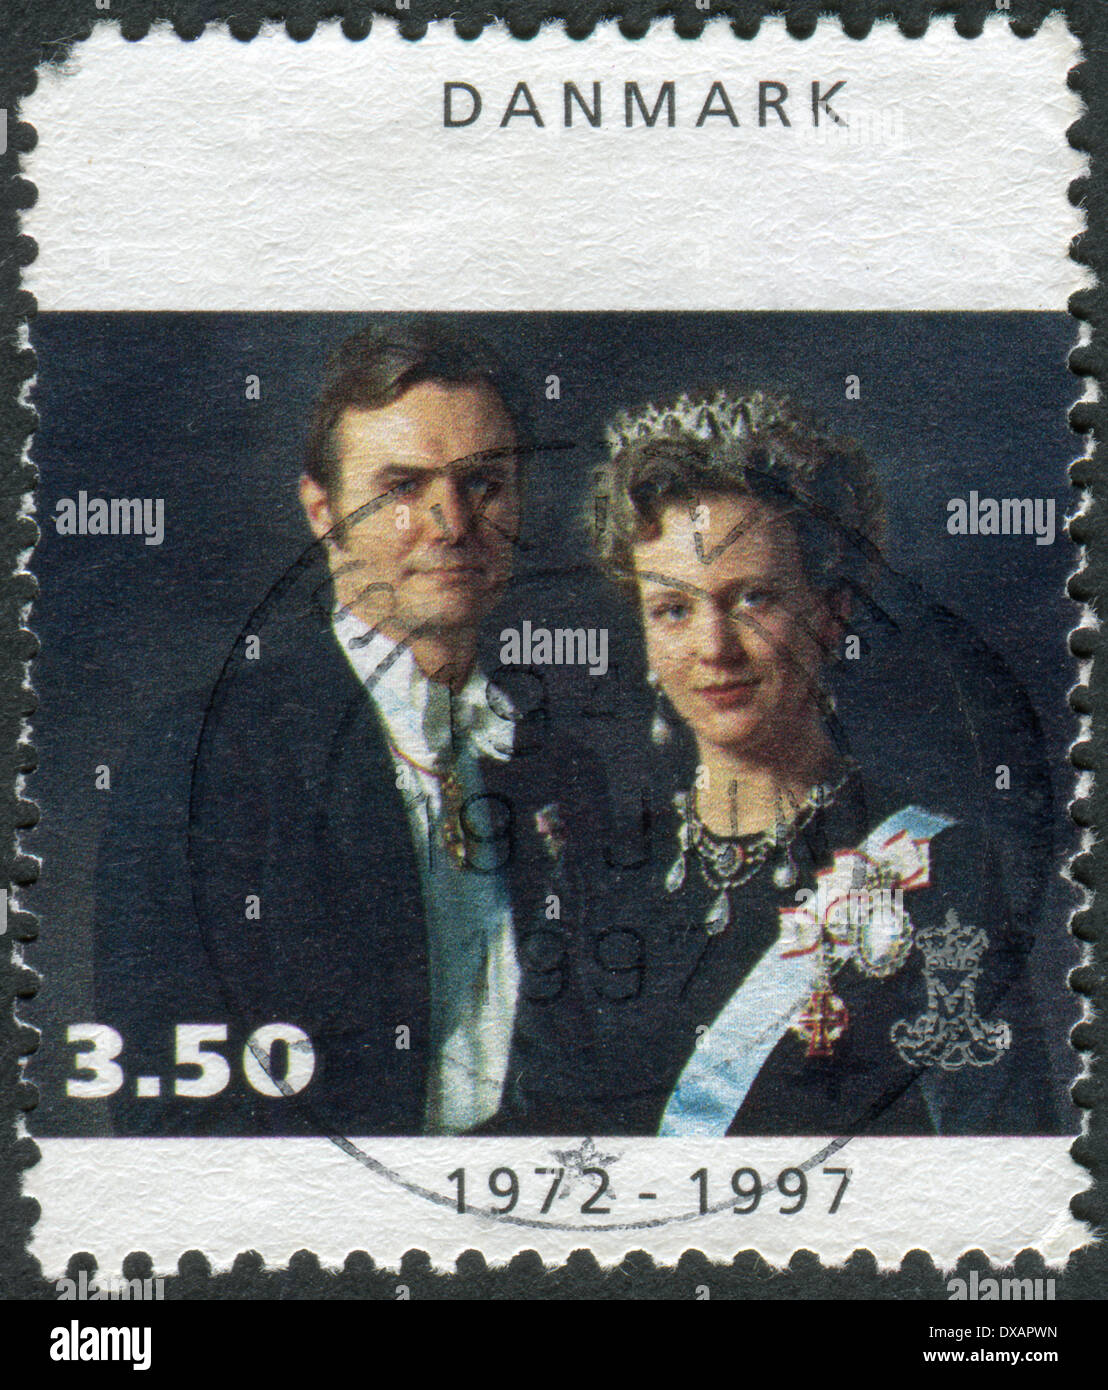 Timbre-poste imprimé au Danemark, montre la Reine Margrethe II et le Prince Henrik Banque D'Images